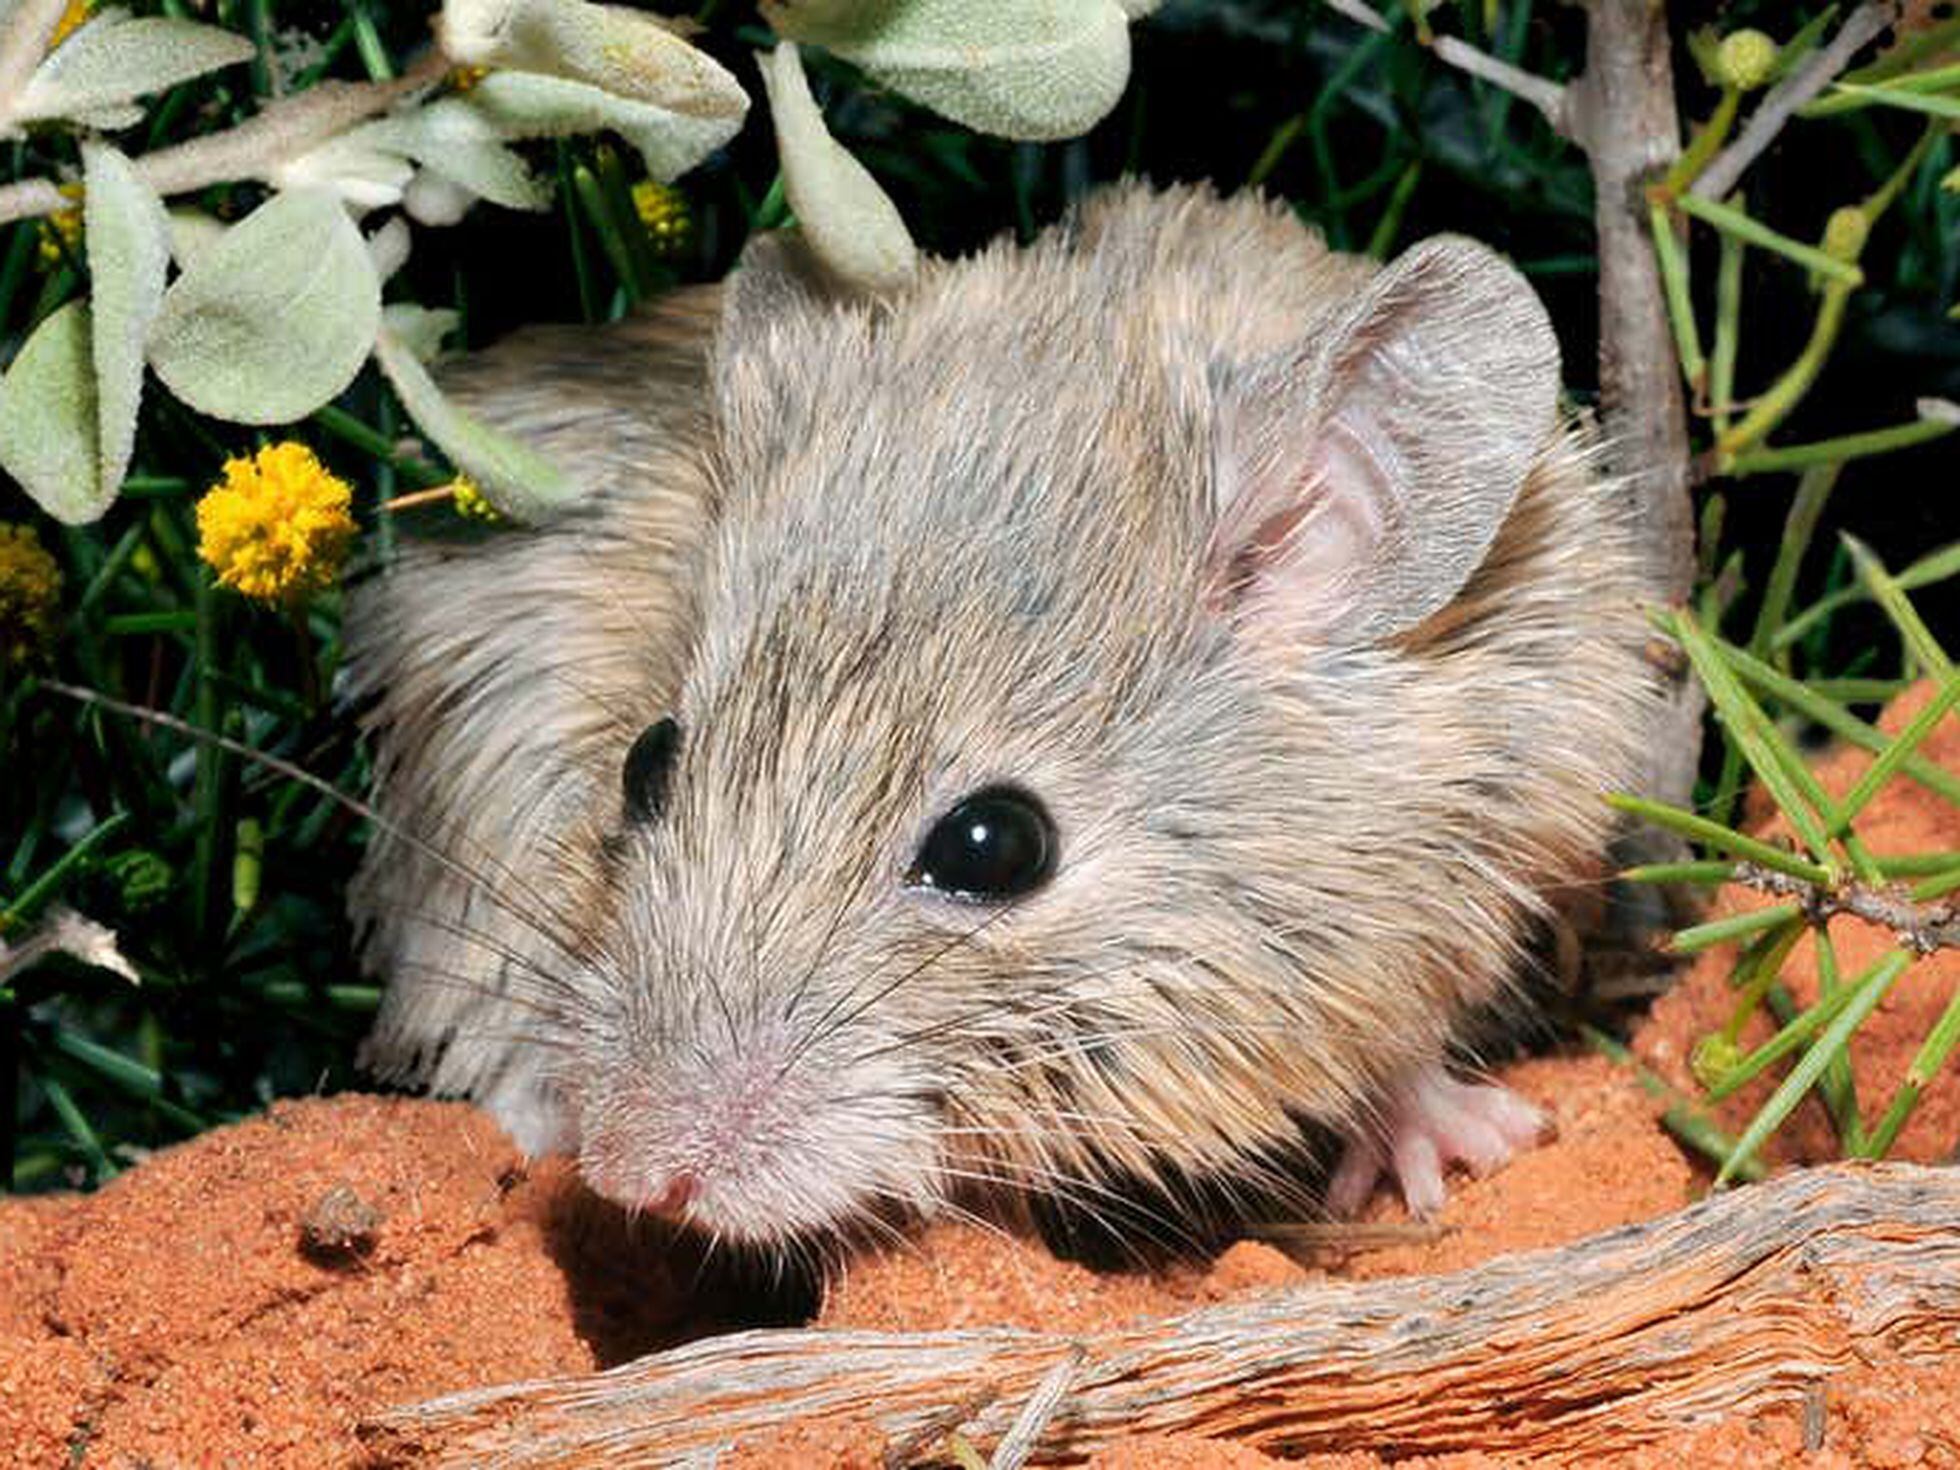 Nova espécie de ratazana gigante é descoberta por cientista australiano